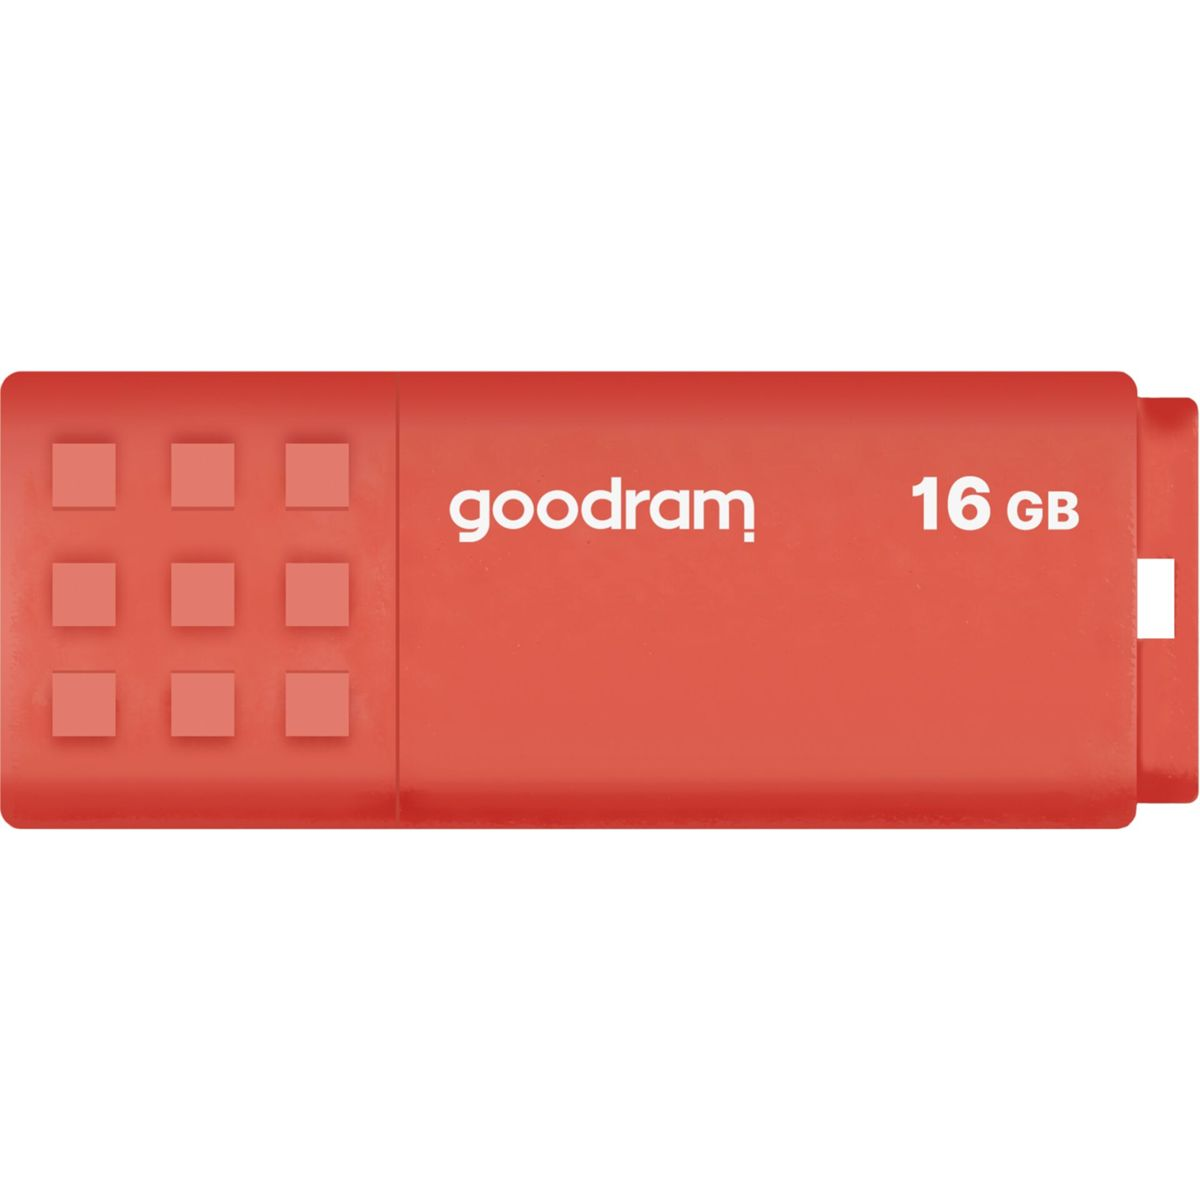 GOODRAM UME3 USB 3.0 Orange Stick 16GB 16 (orange, GB) USB